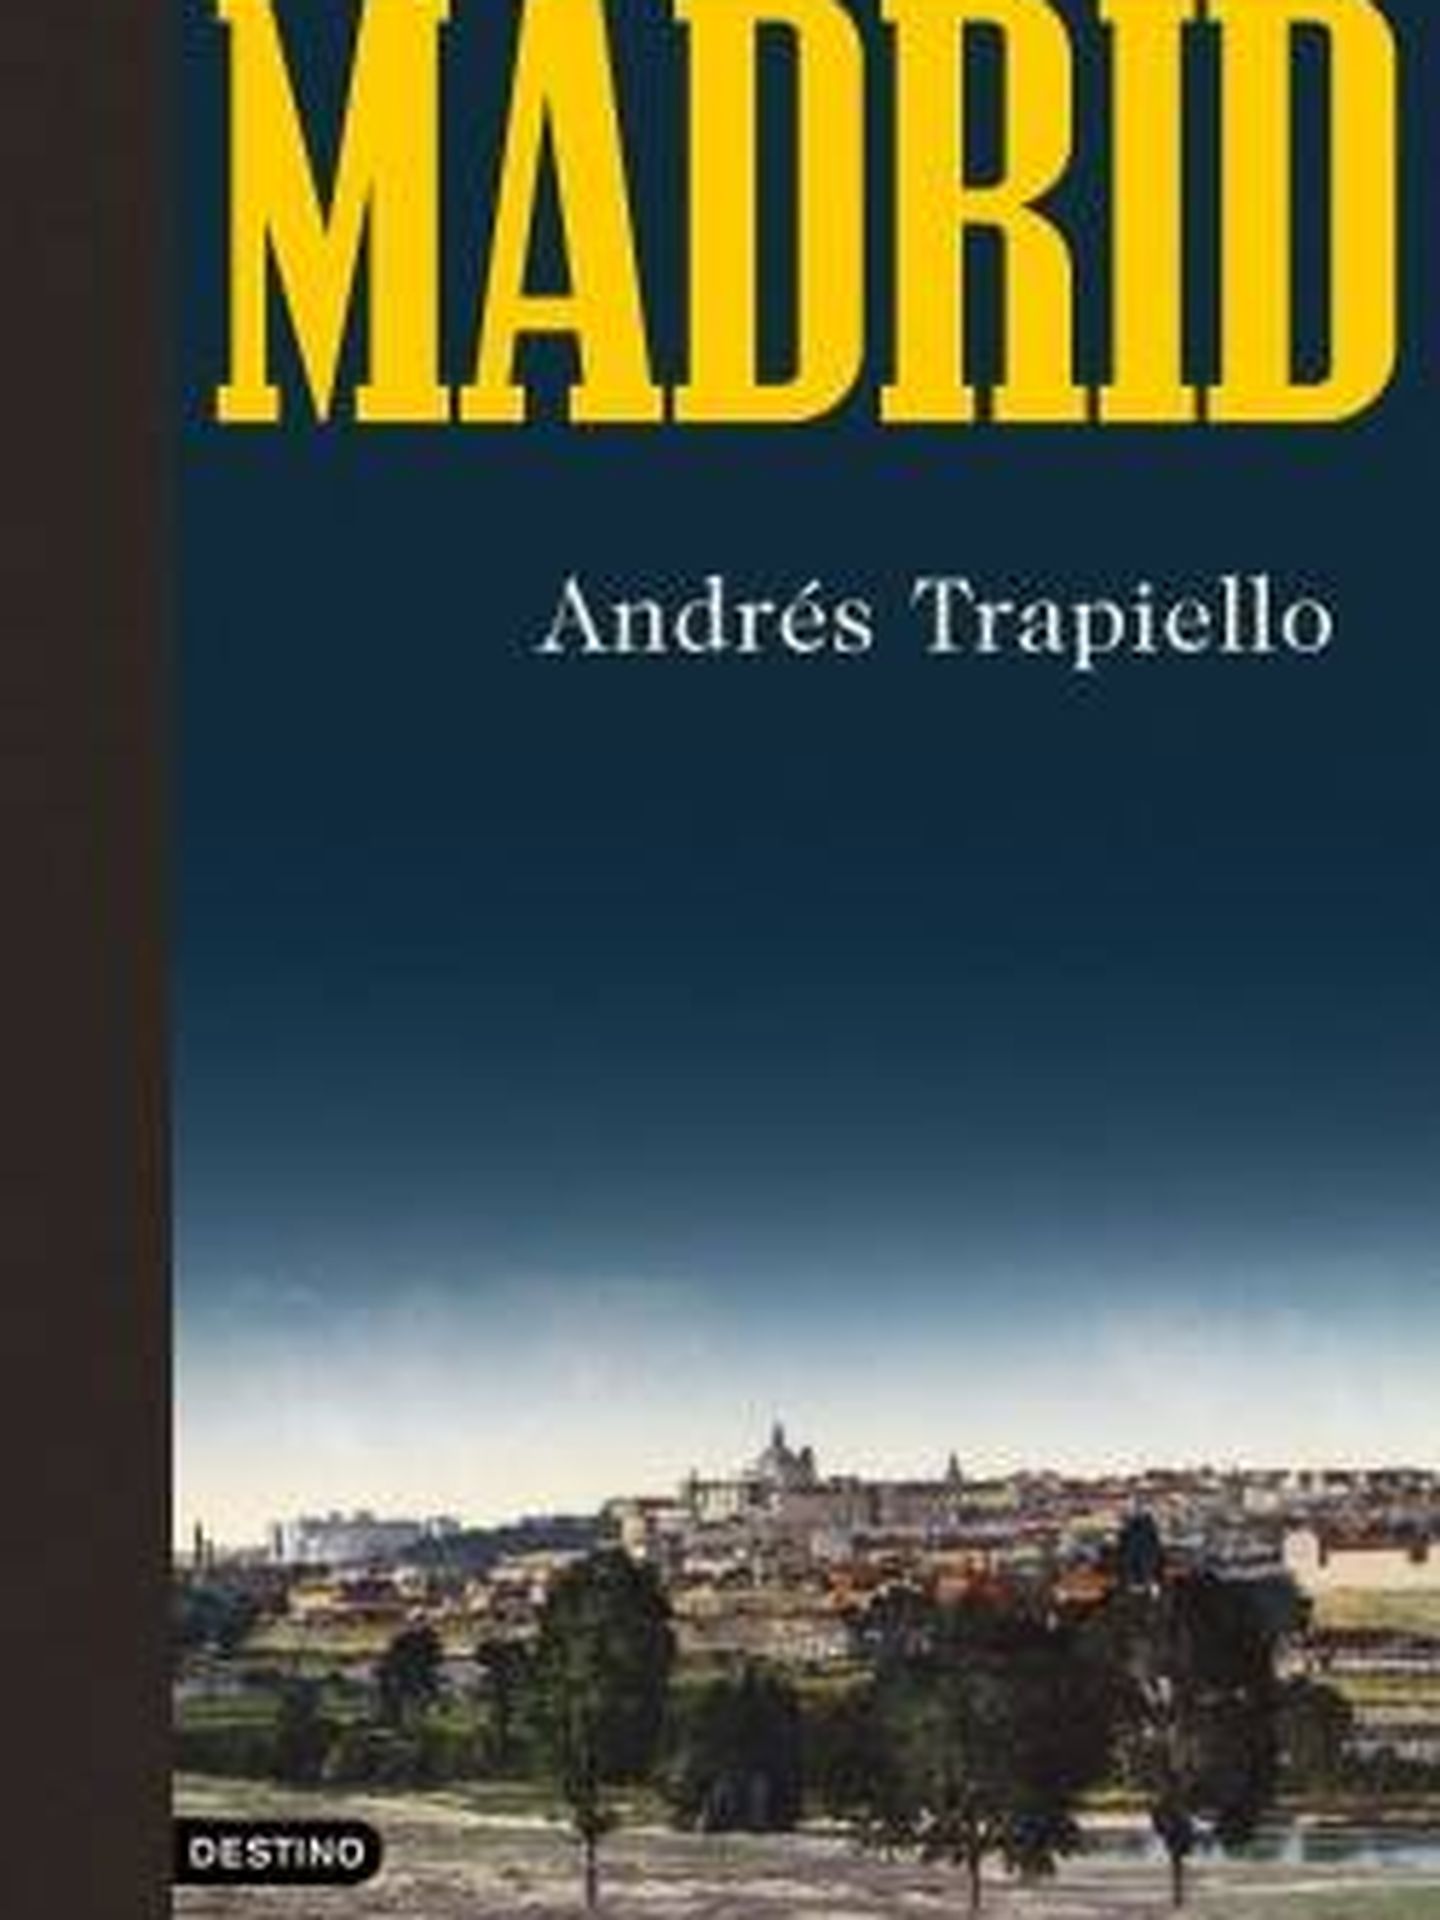 'Madrid'